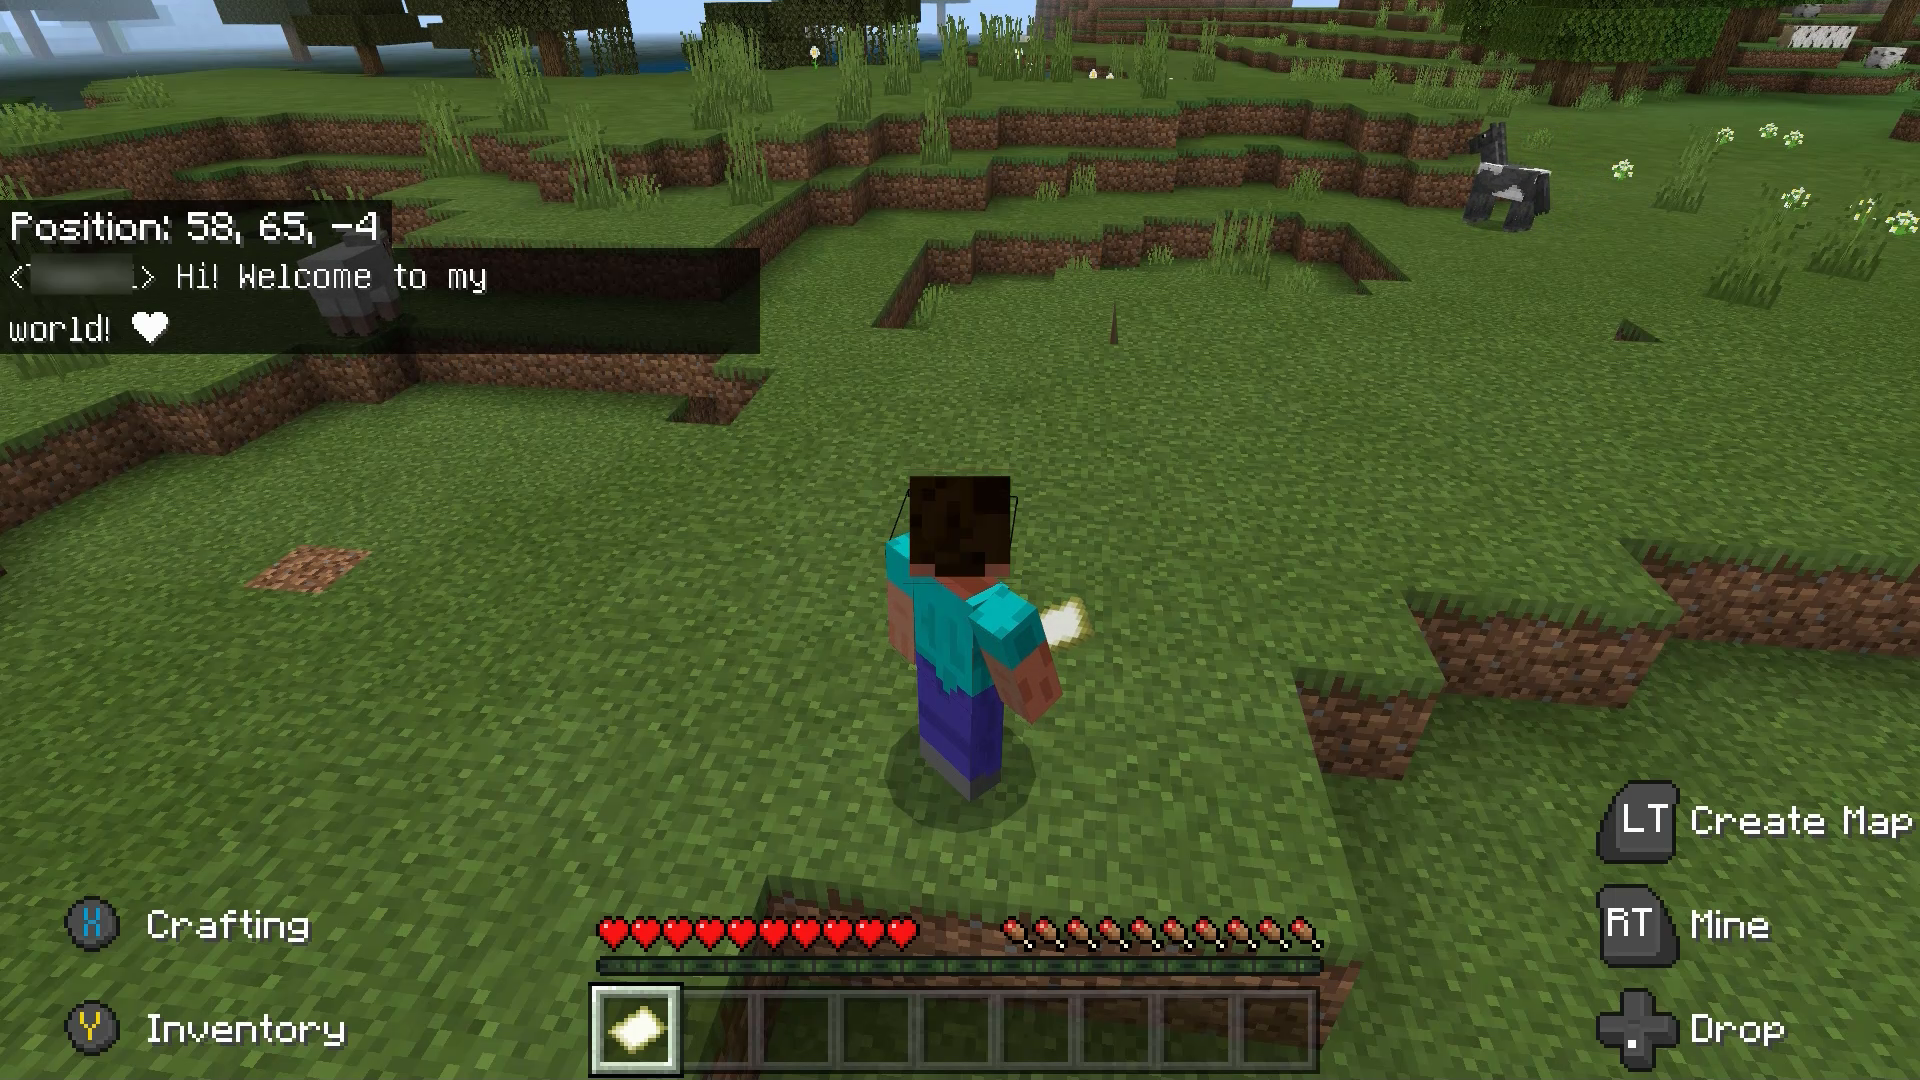 Minecraft のキャラクター、スティーブがフィールドに立っています。 プレイヤーがこのキャラクターに「こんにちは! 私の世界へようこそ! ハートの絵文字」というメッセージを送信しました。